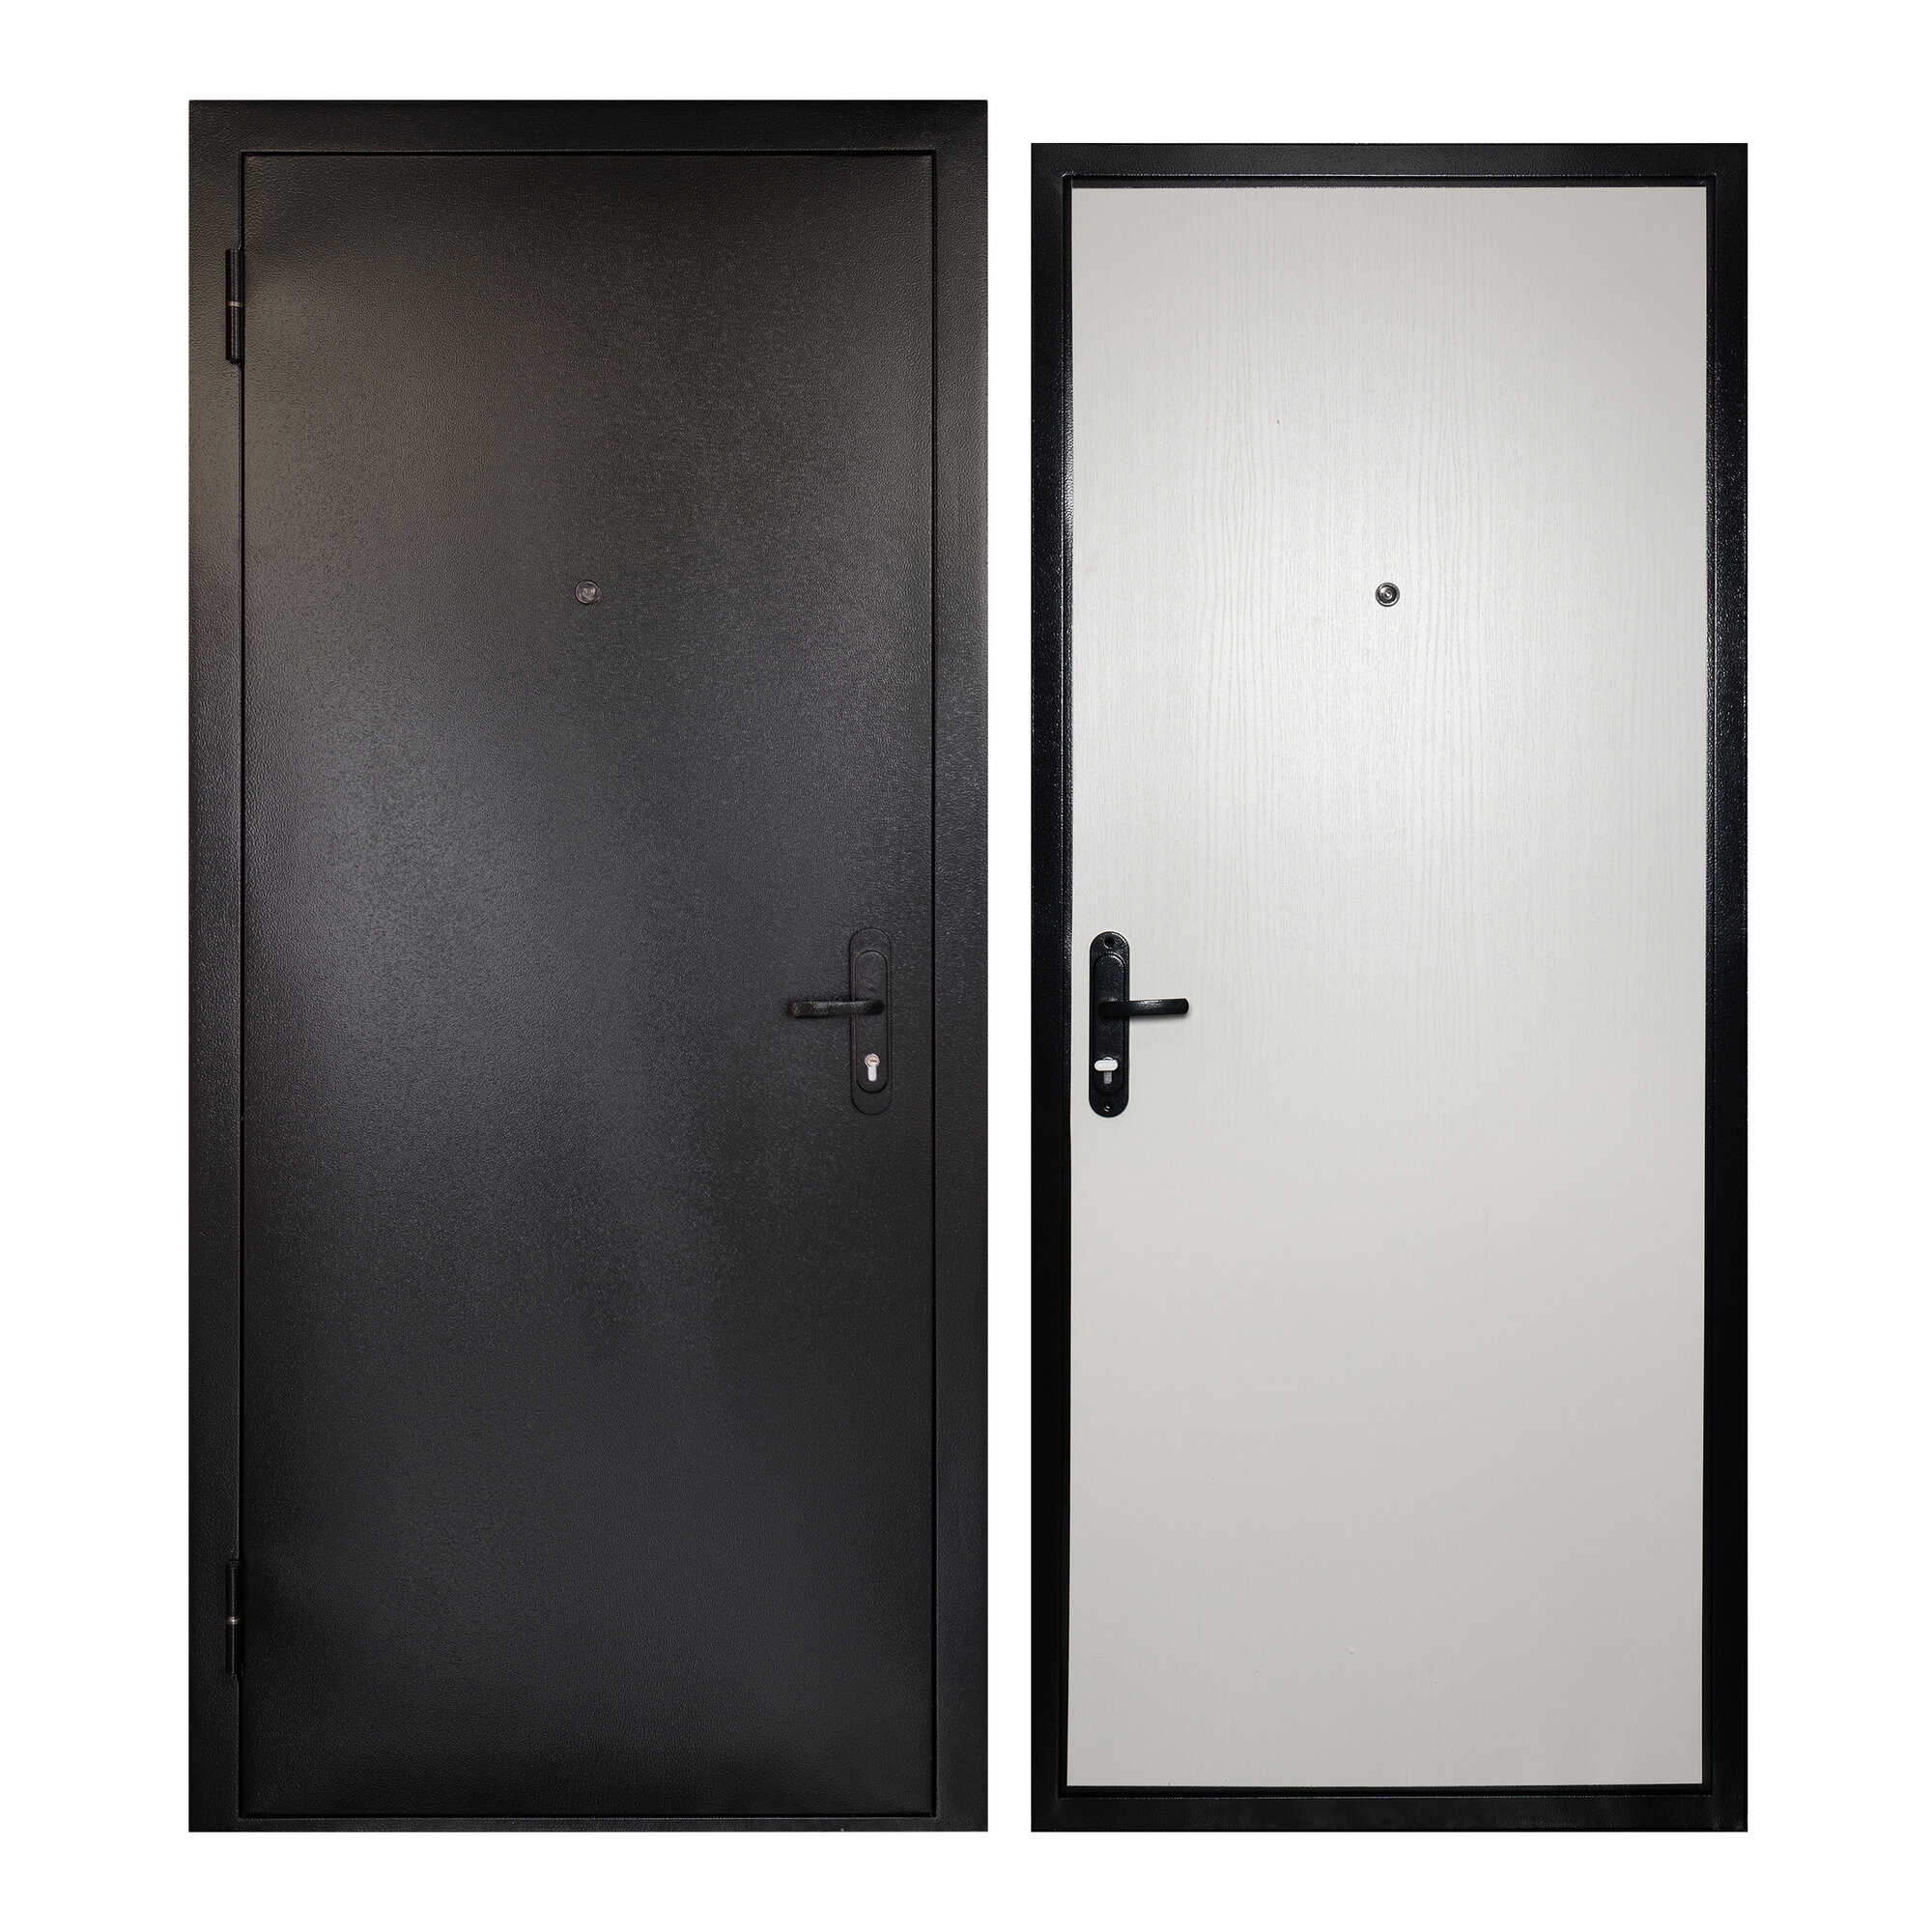 Дверь входная для квартиры Unicorn металлическая Terminal 960х2050 левая антивандальное покрытие уплотнитель цилиндровый замок серый/белый